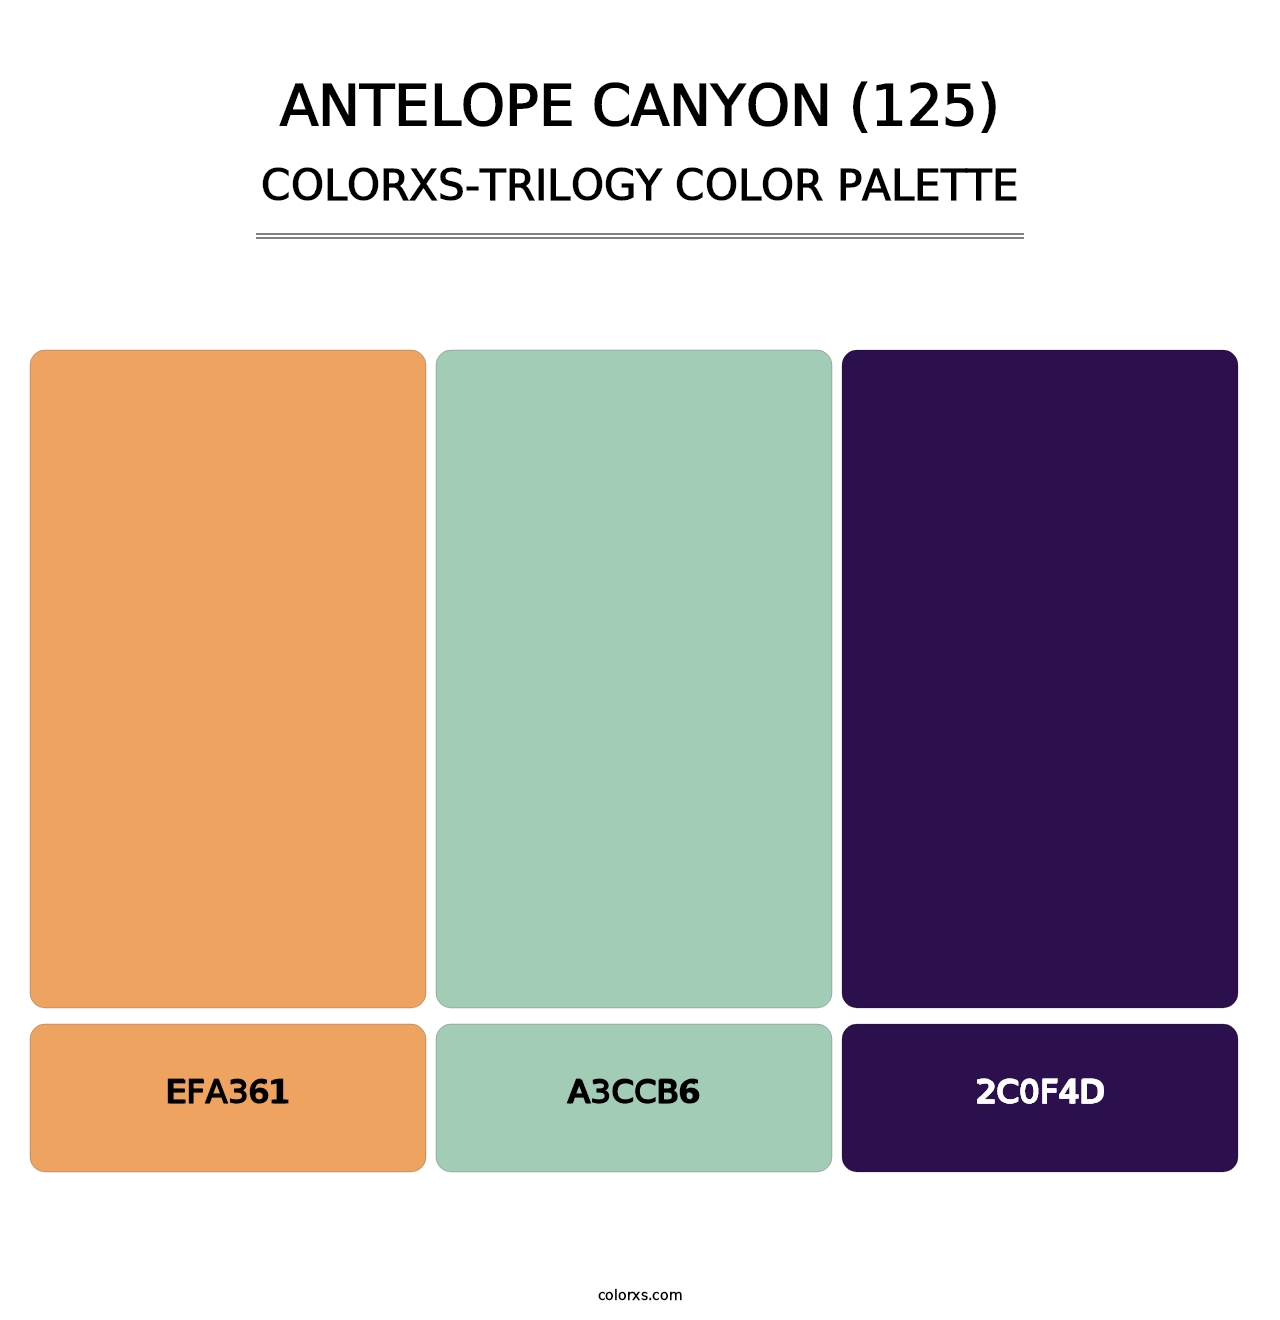 Antelope Canyon (125) - Colorxs Trilogy Palette